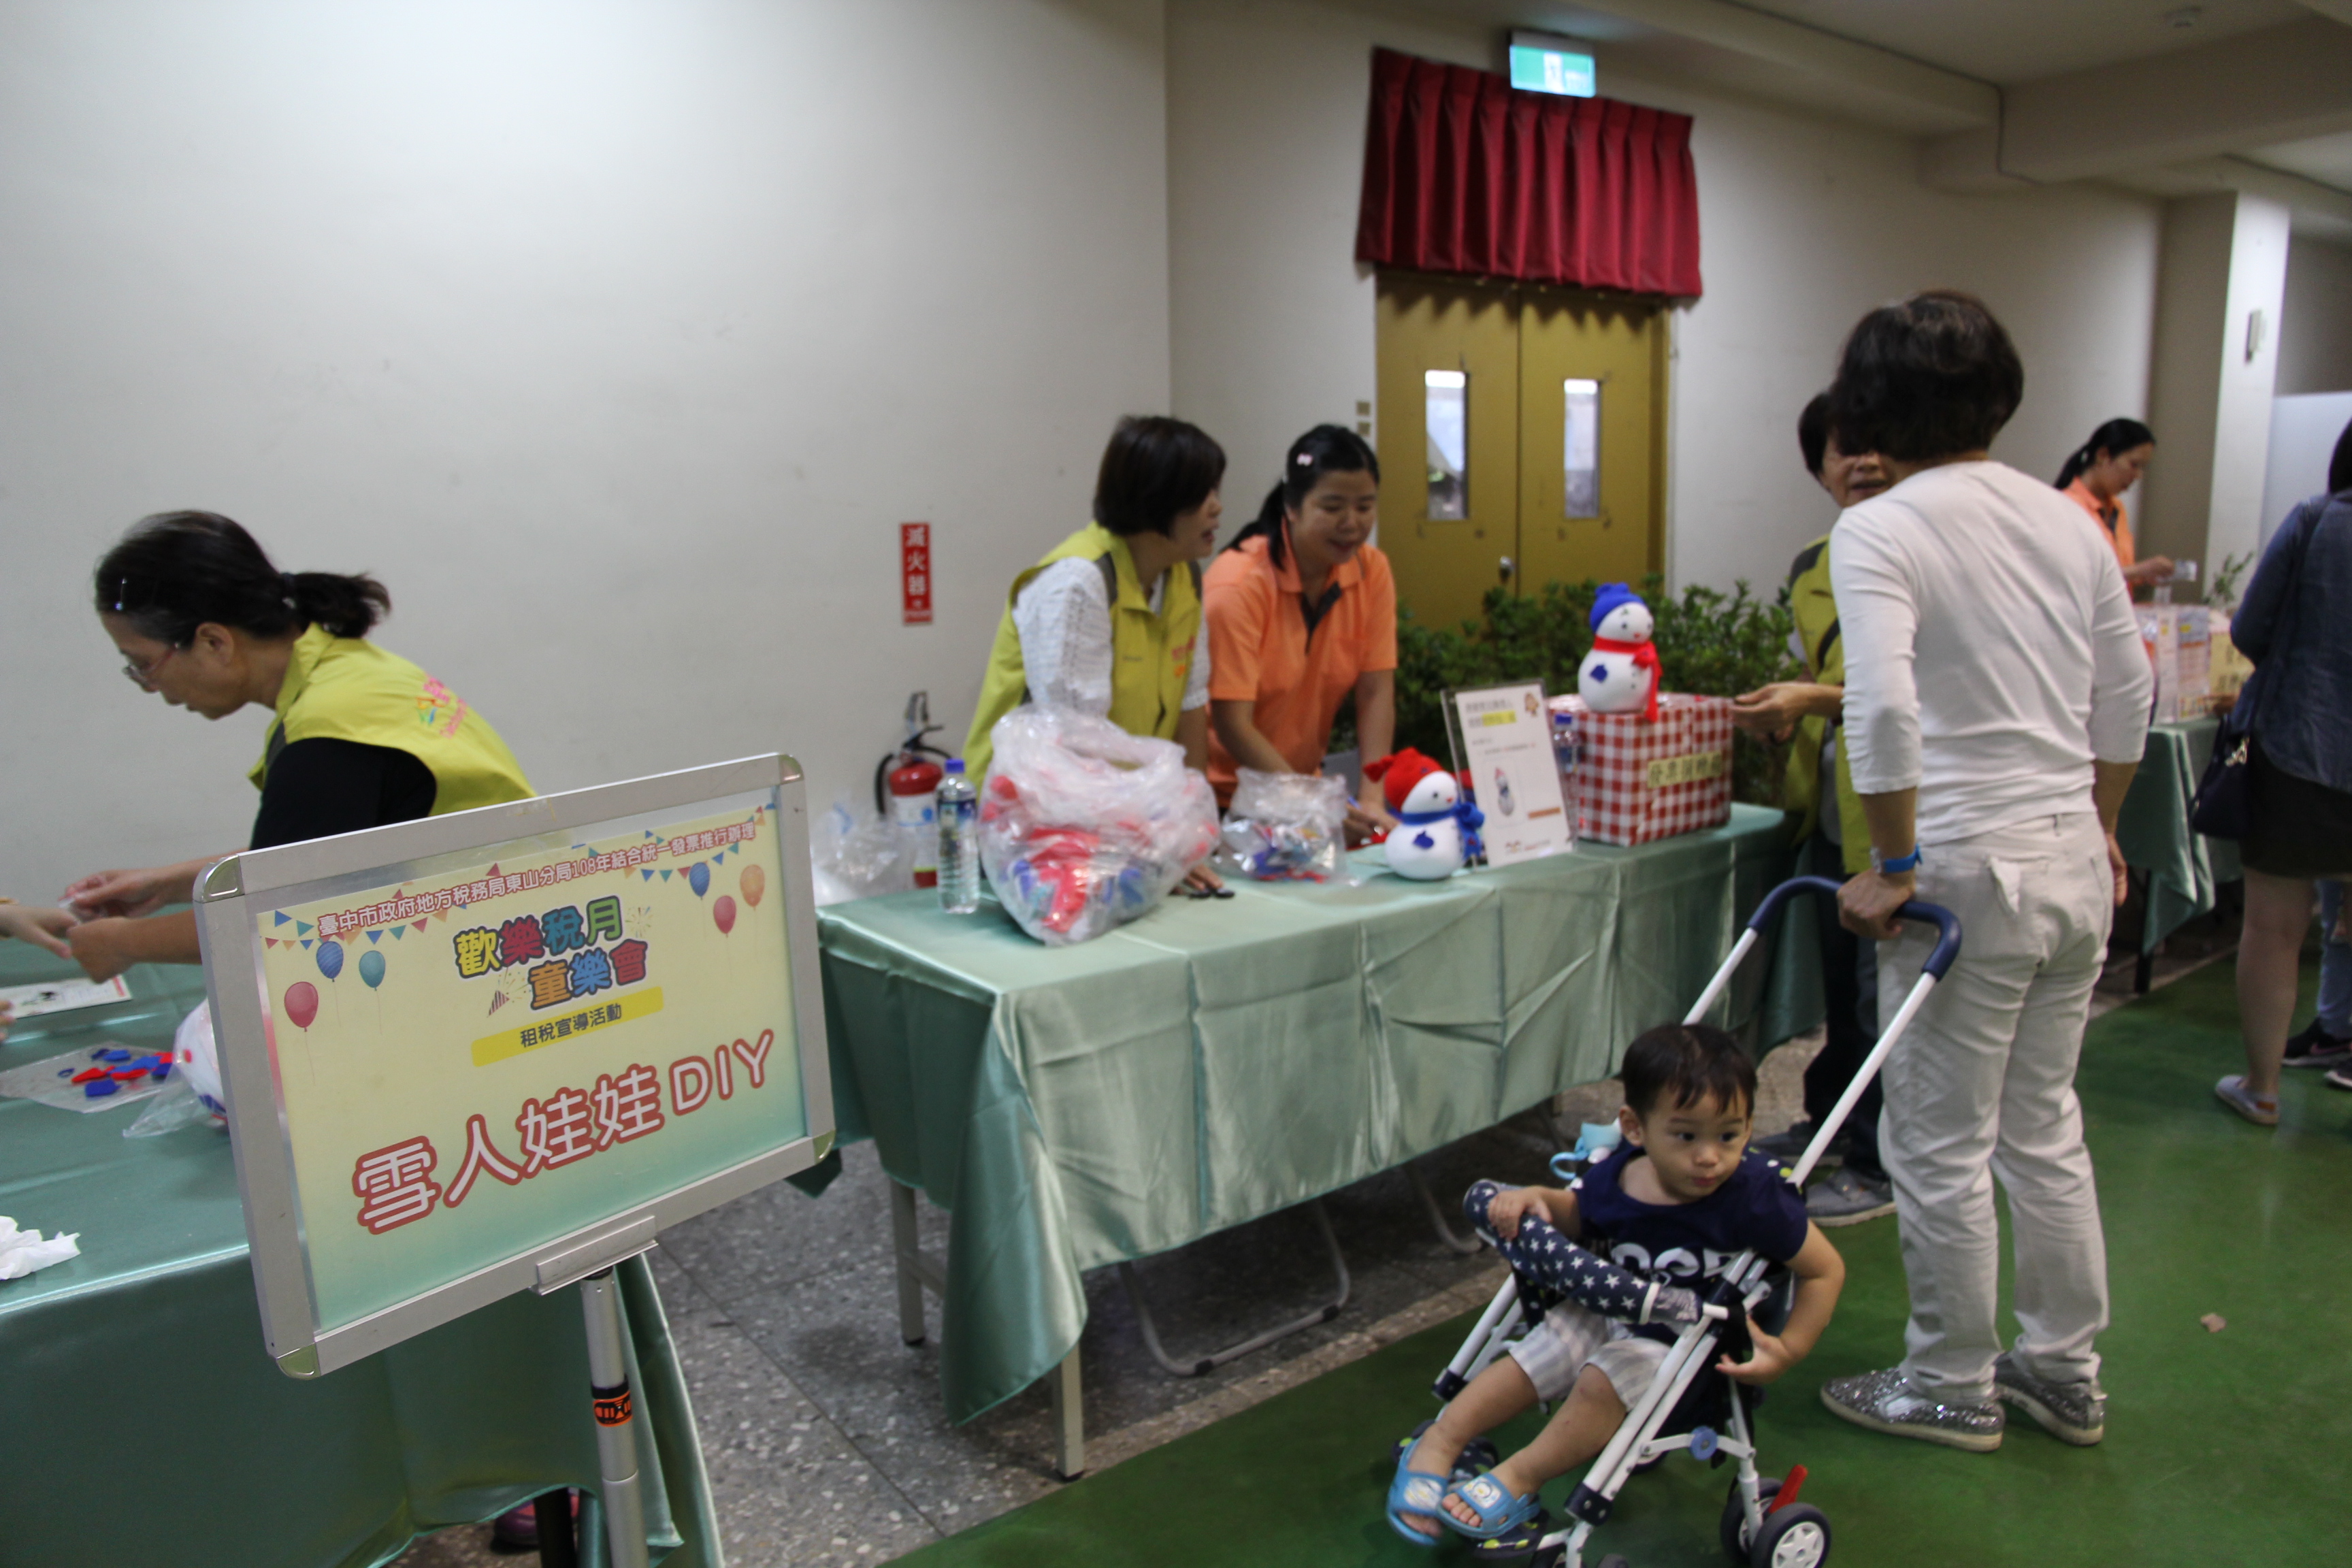 為了因應活動主軸客群以小朋友及家長為主，現場設立雪人娃娃DIY攤位，提供民眾材料包與小朋友一起製作可愛的娃娃！